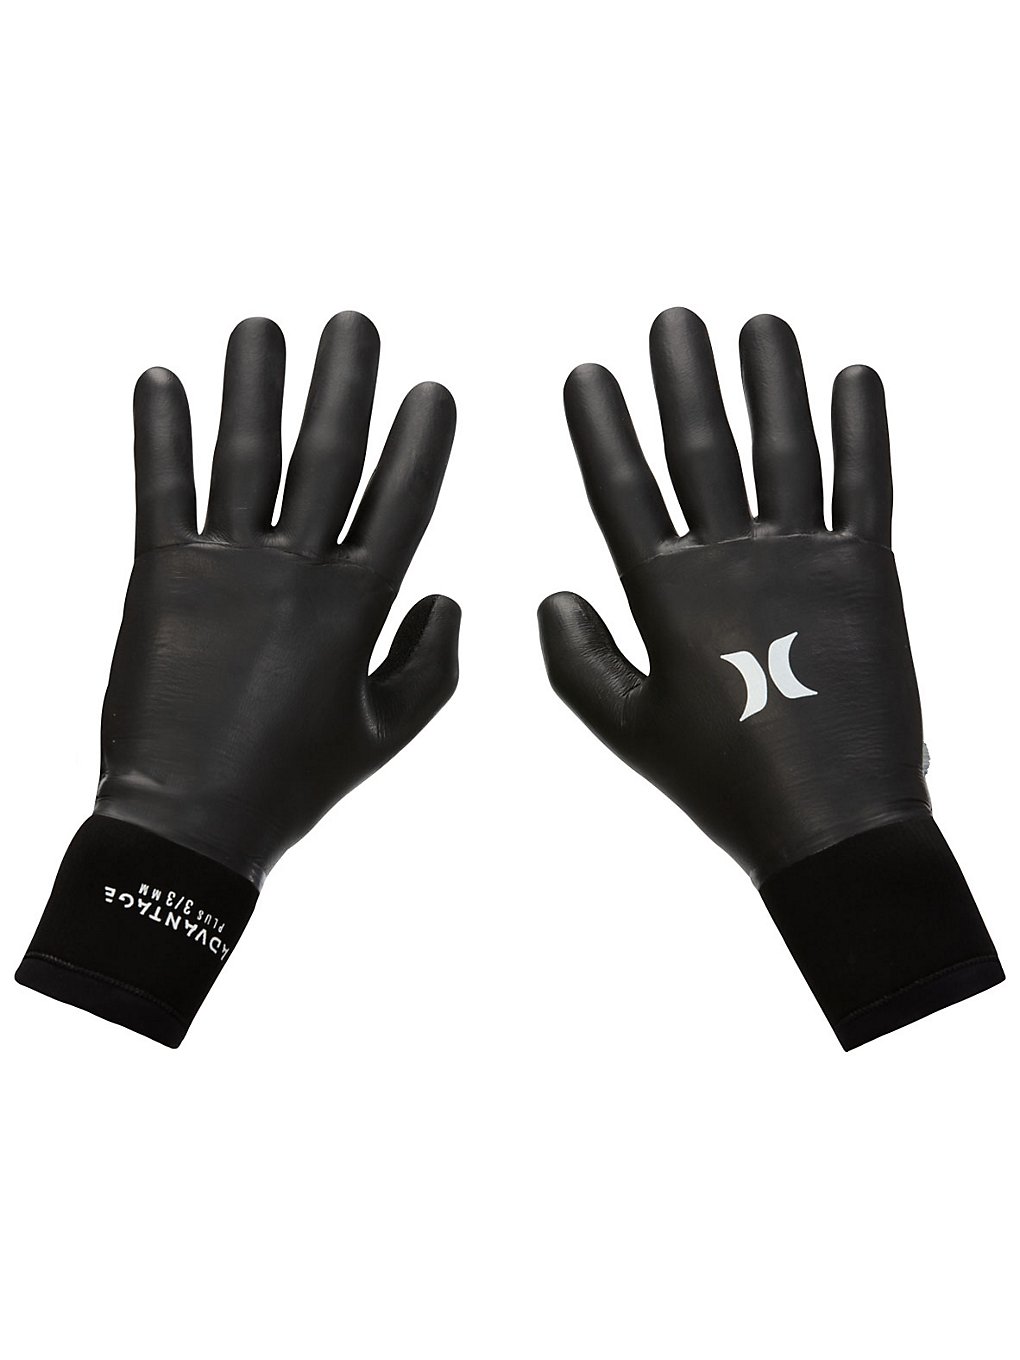 Hurley Advantage Plus 3mm Handschoenen zwart